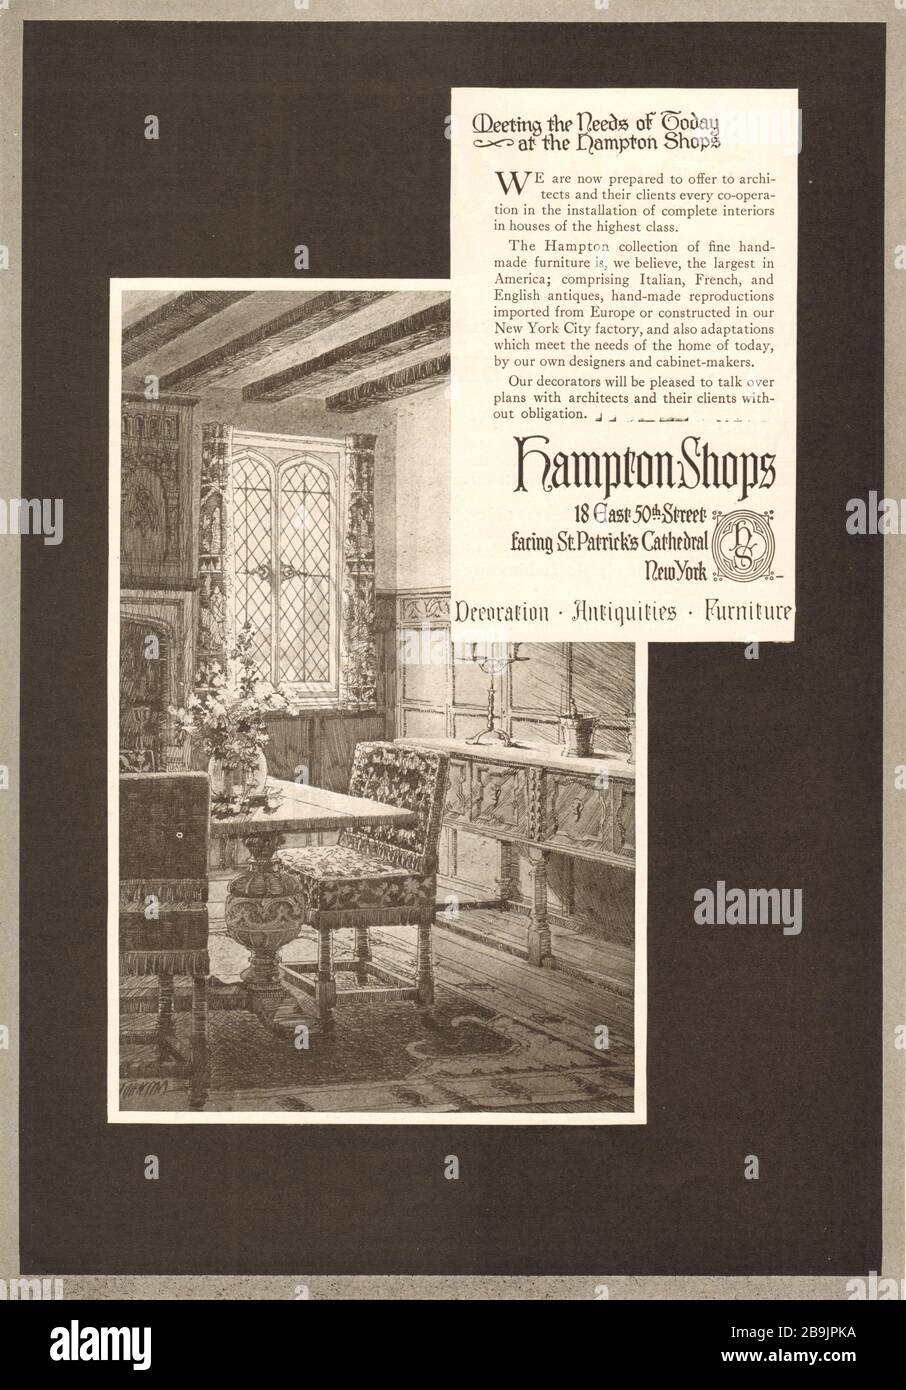 Répondre aux besoins d'aujourd'hui dans les magasins Hampton. Hampton Shops, 18 East 50ème Street, face à la cathédrale St Patrick, New York (1921) Banque D'Images